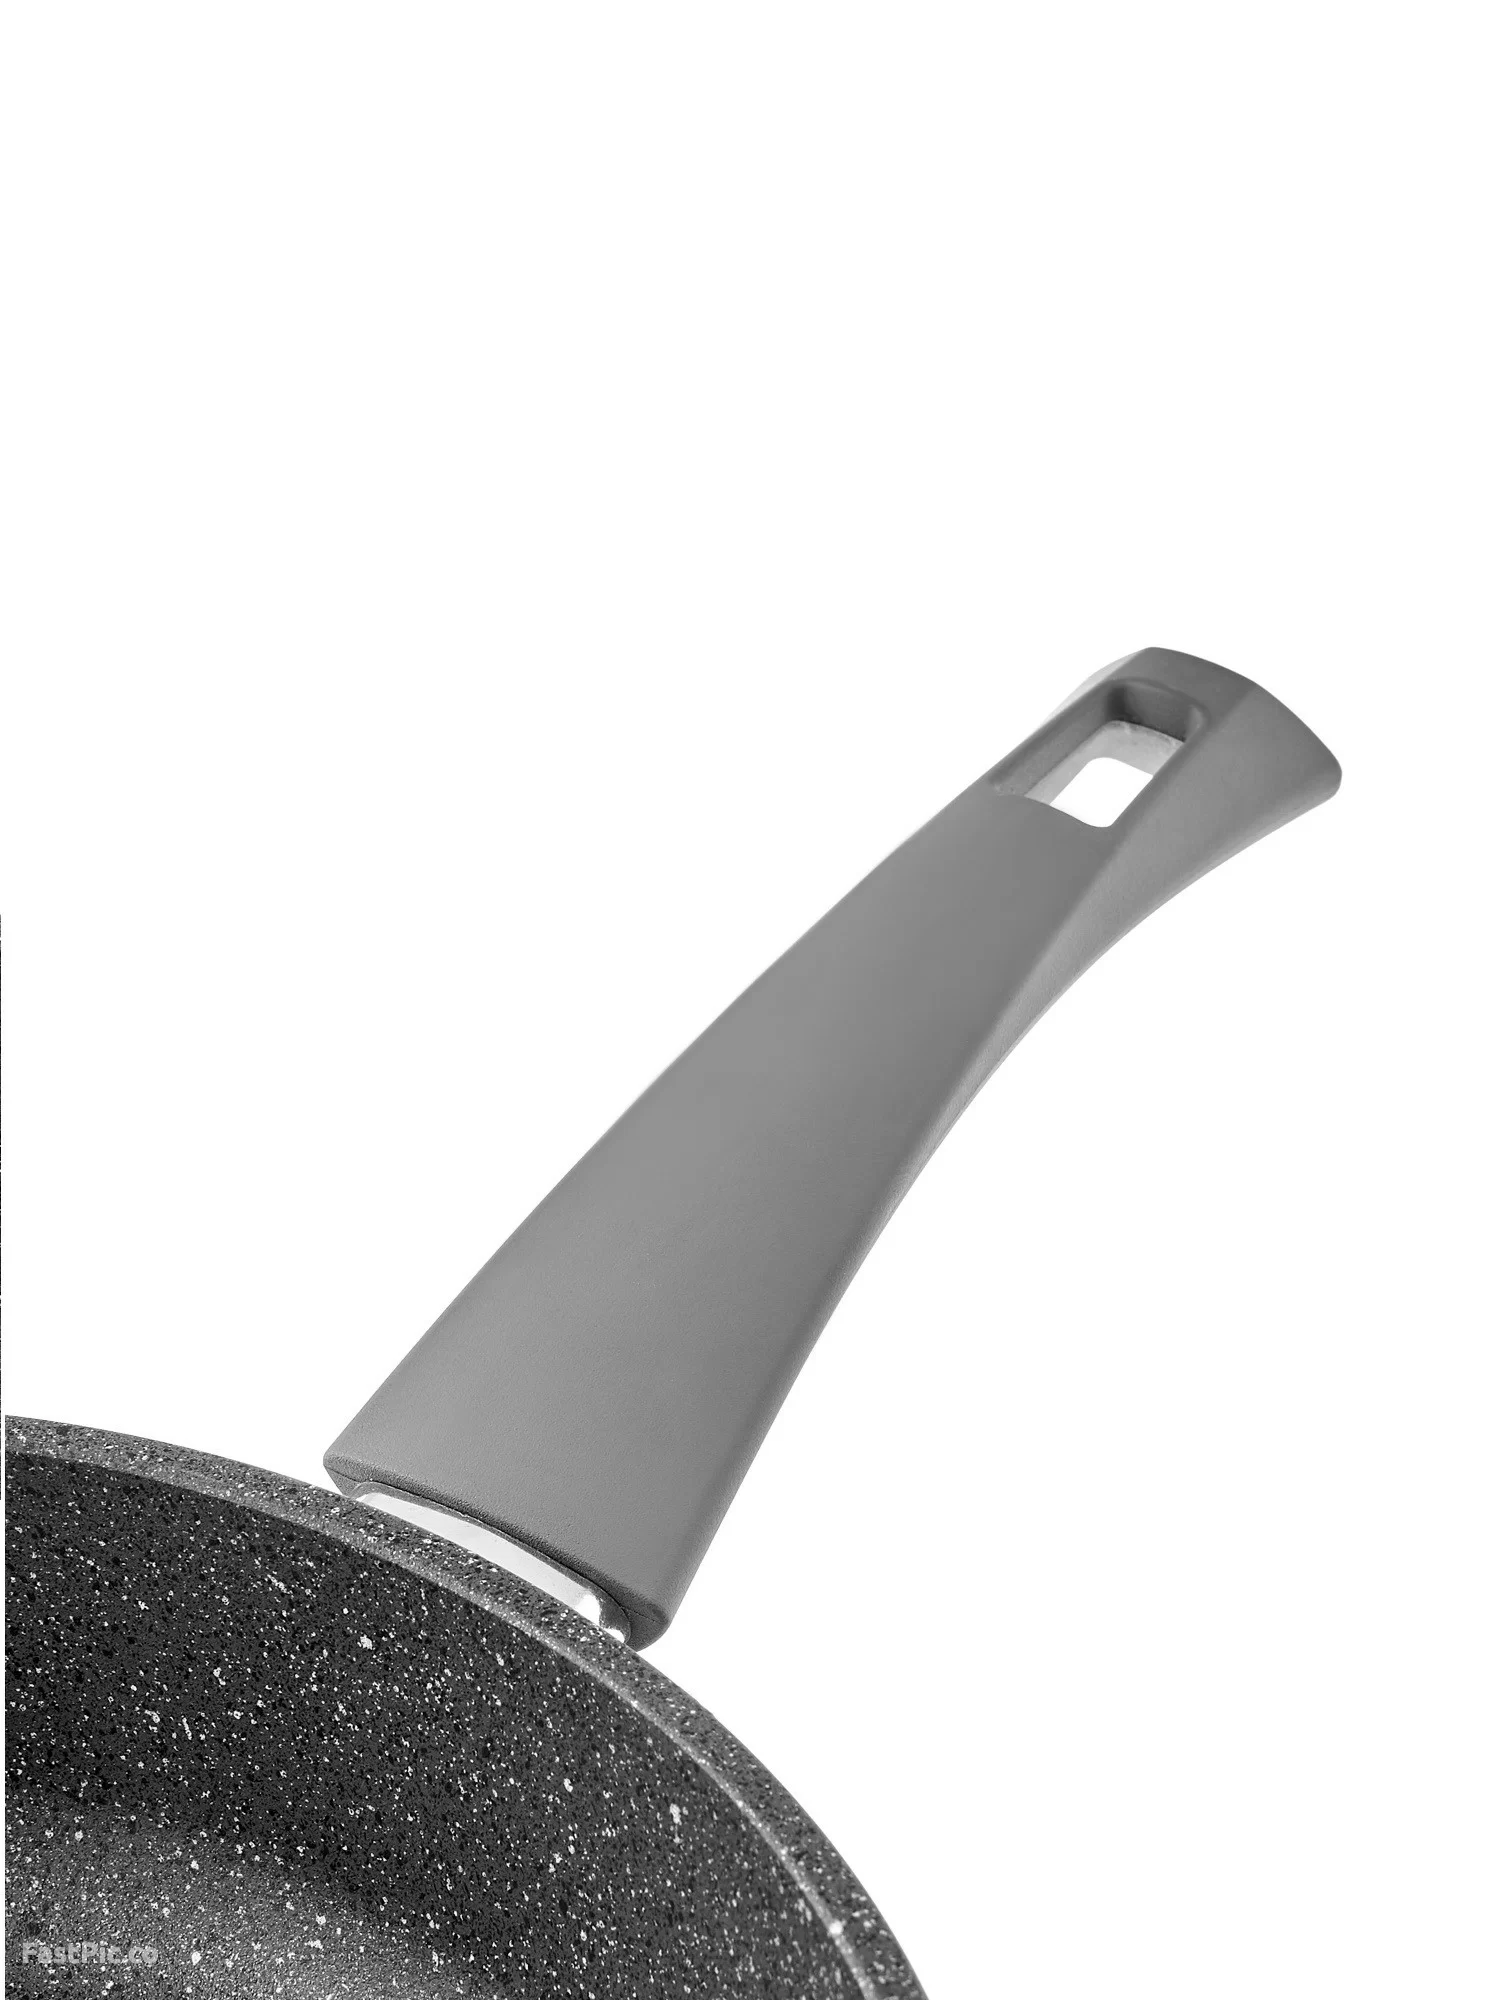 Сковорода Vari Pietra серый гранит 22 см ручка Soft-Touch